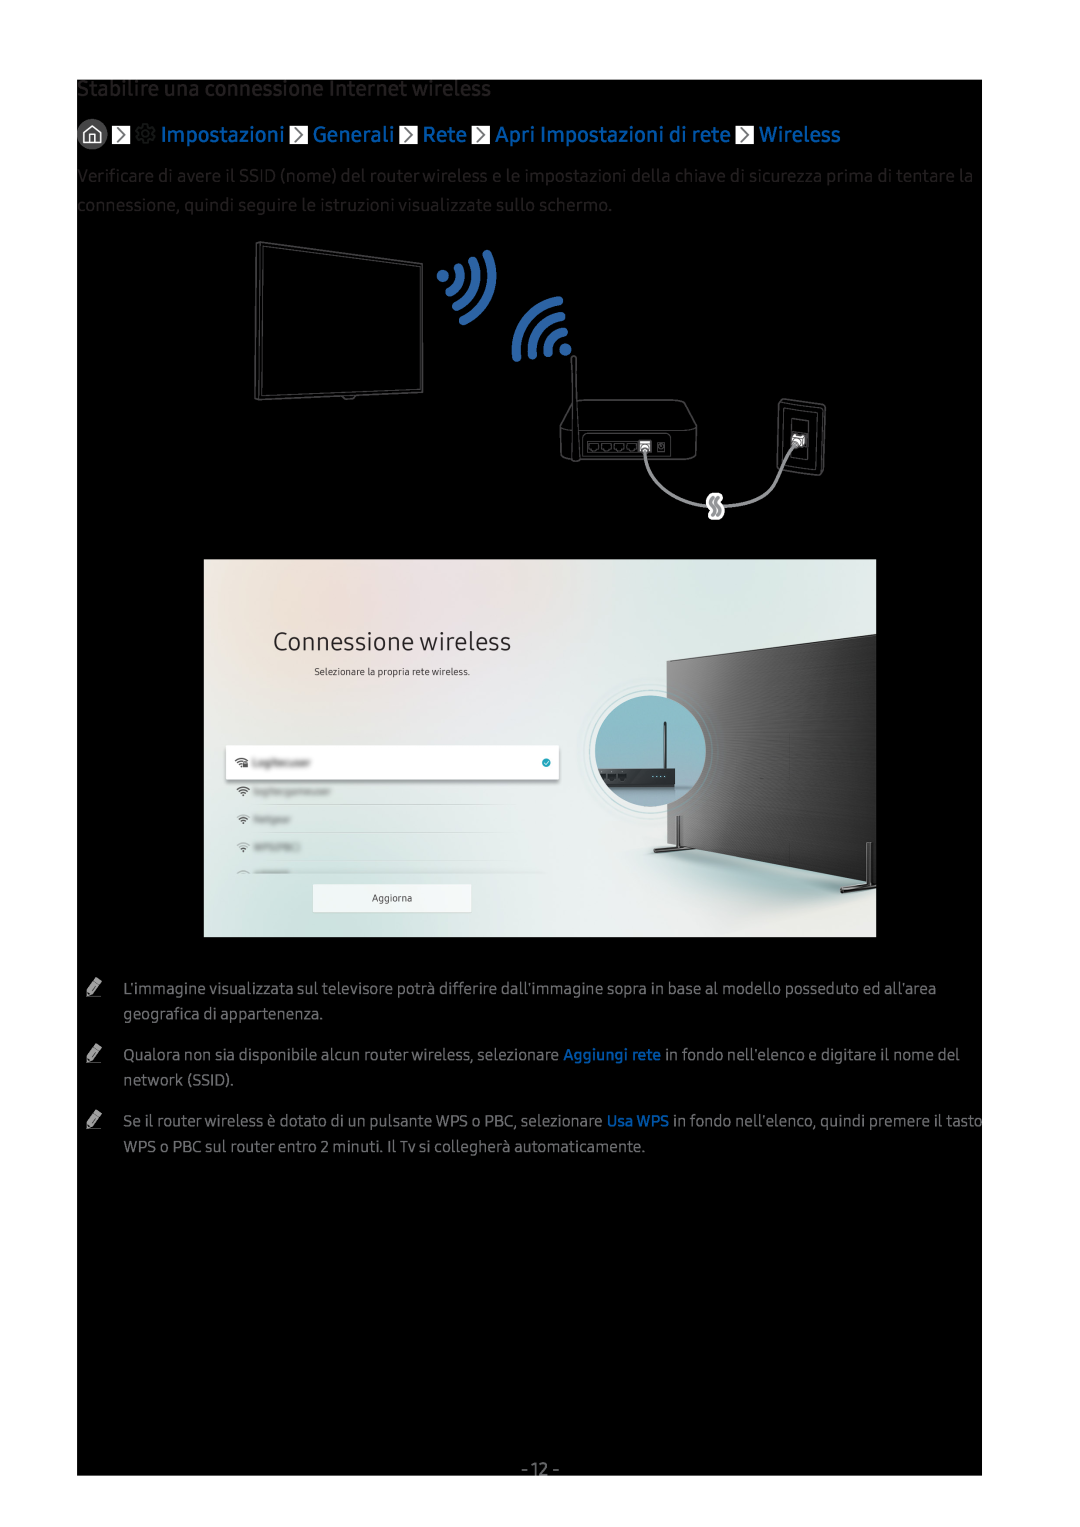 Samsung UE43M5600AWXXN, UE55M5570AUXZG, UE49M5580AUXZG Stabilire una connessione Internet wireless, Connessione wireless 